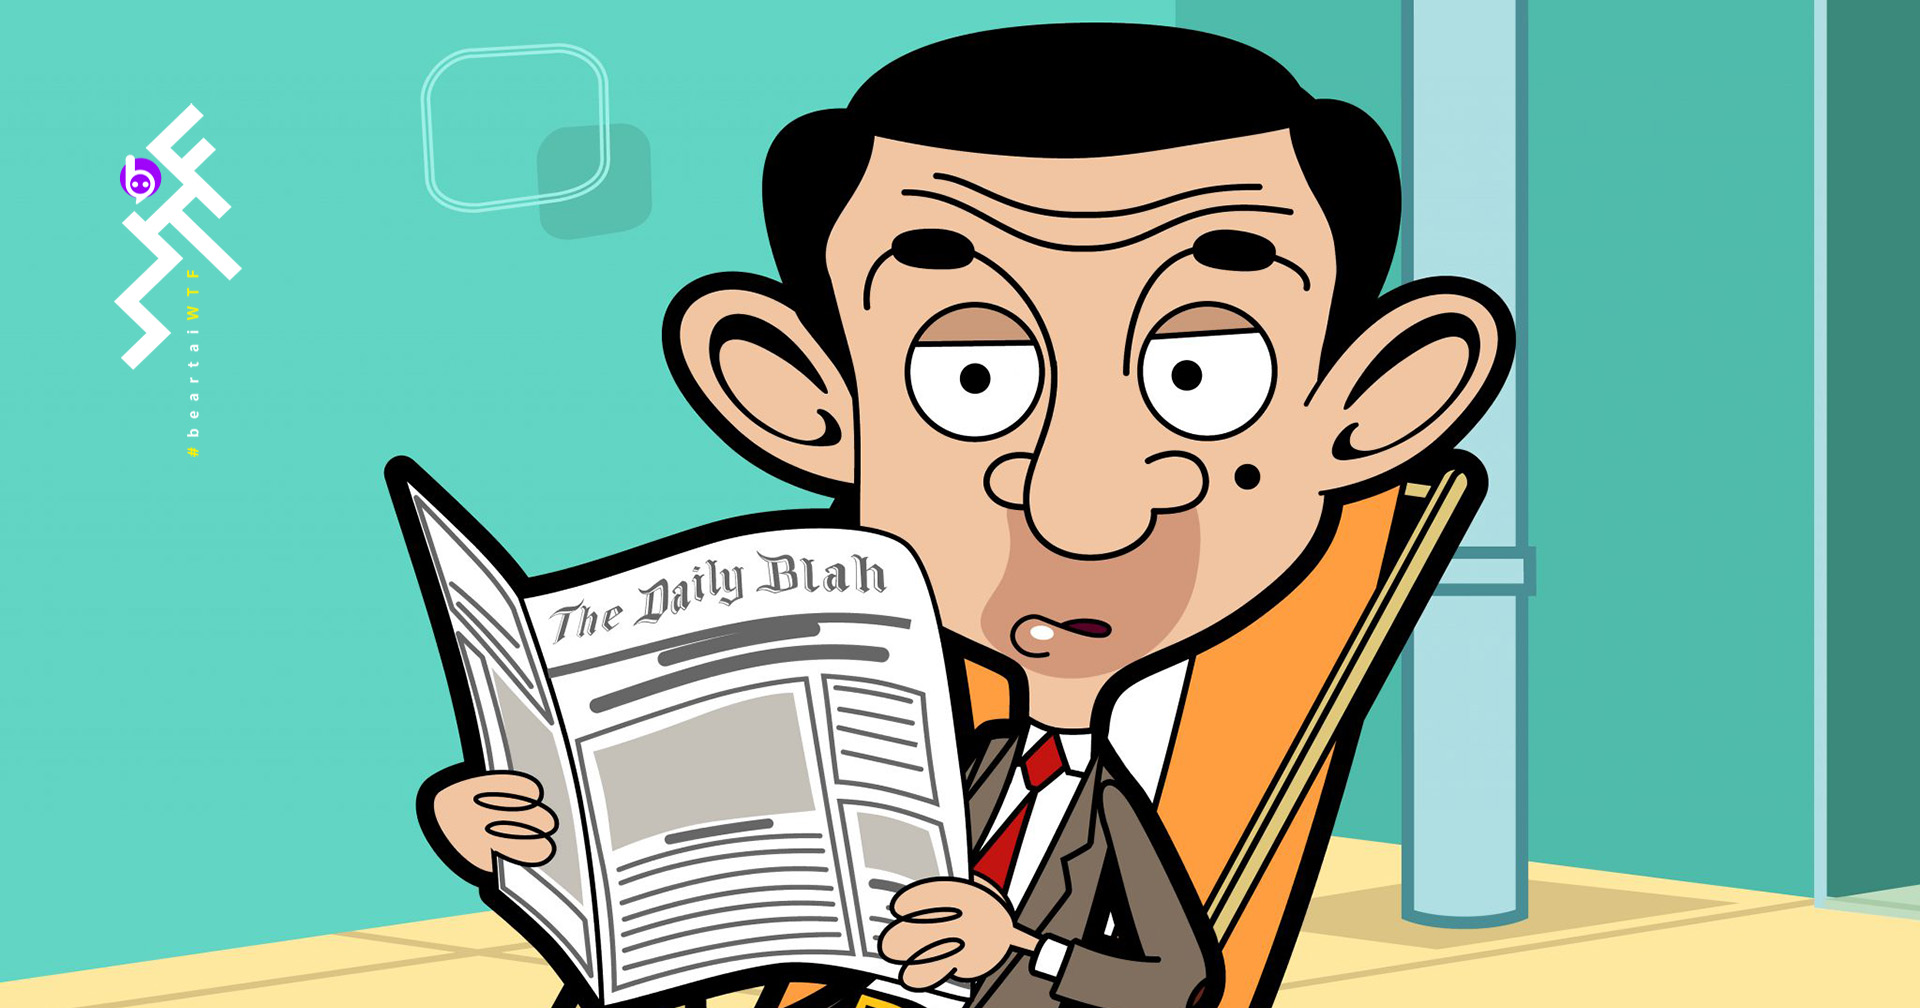 โรวัน แอตคินสัน กำลังพัฒนาแอนิเมชัน Mr. Bean เรื่องใหม่